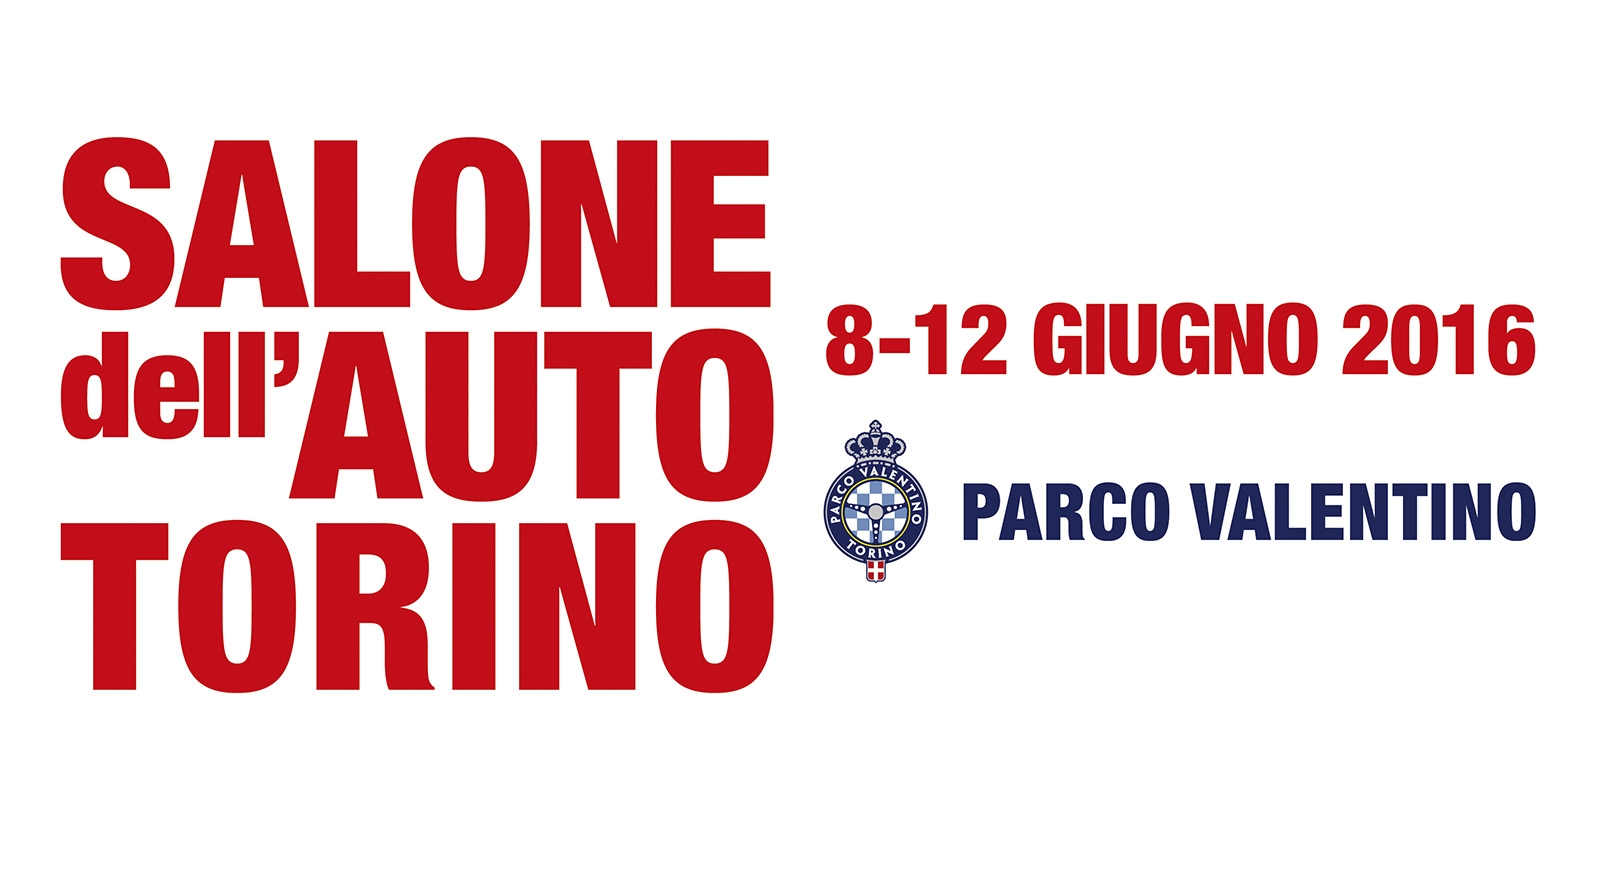 Salone dell’Auto di Torino Parco Valentino 2016: 8 anteprime mondiali e 20 anteprime nazionali